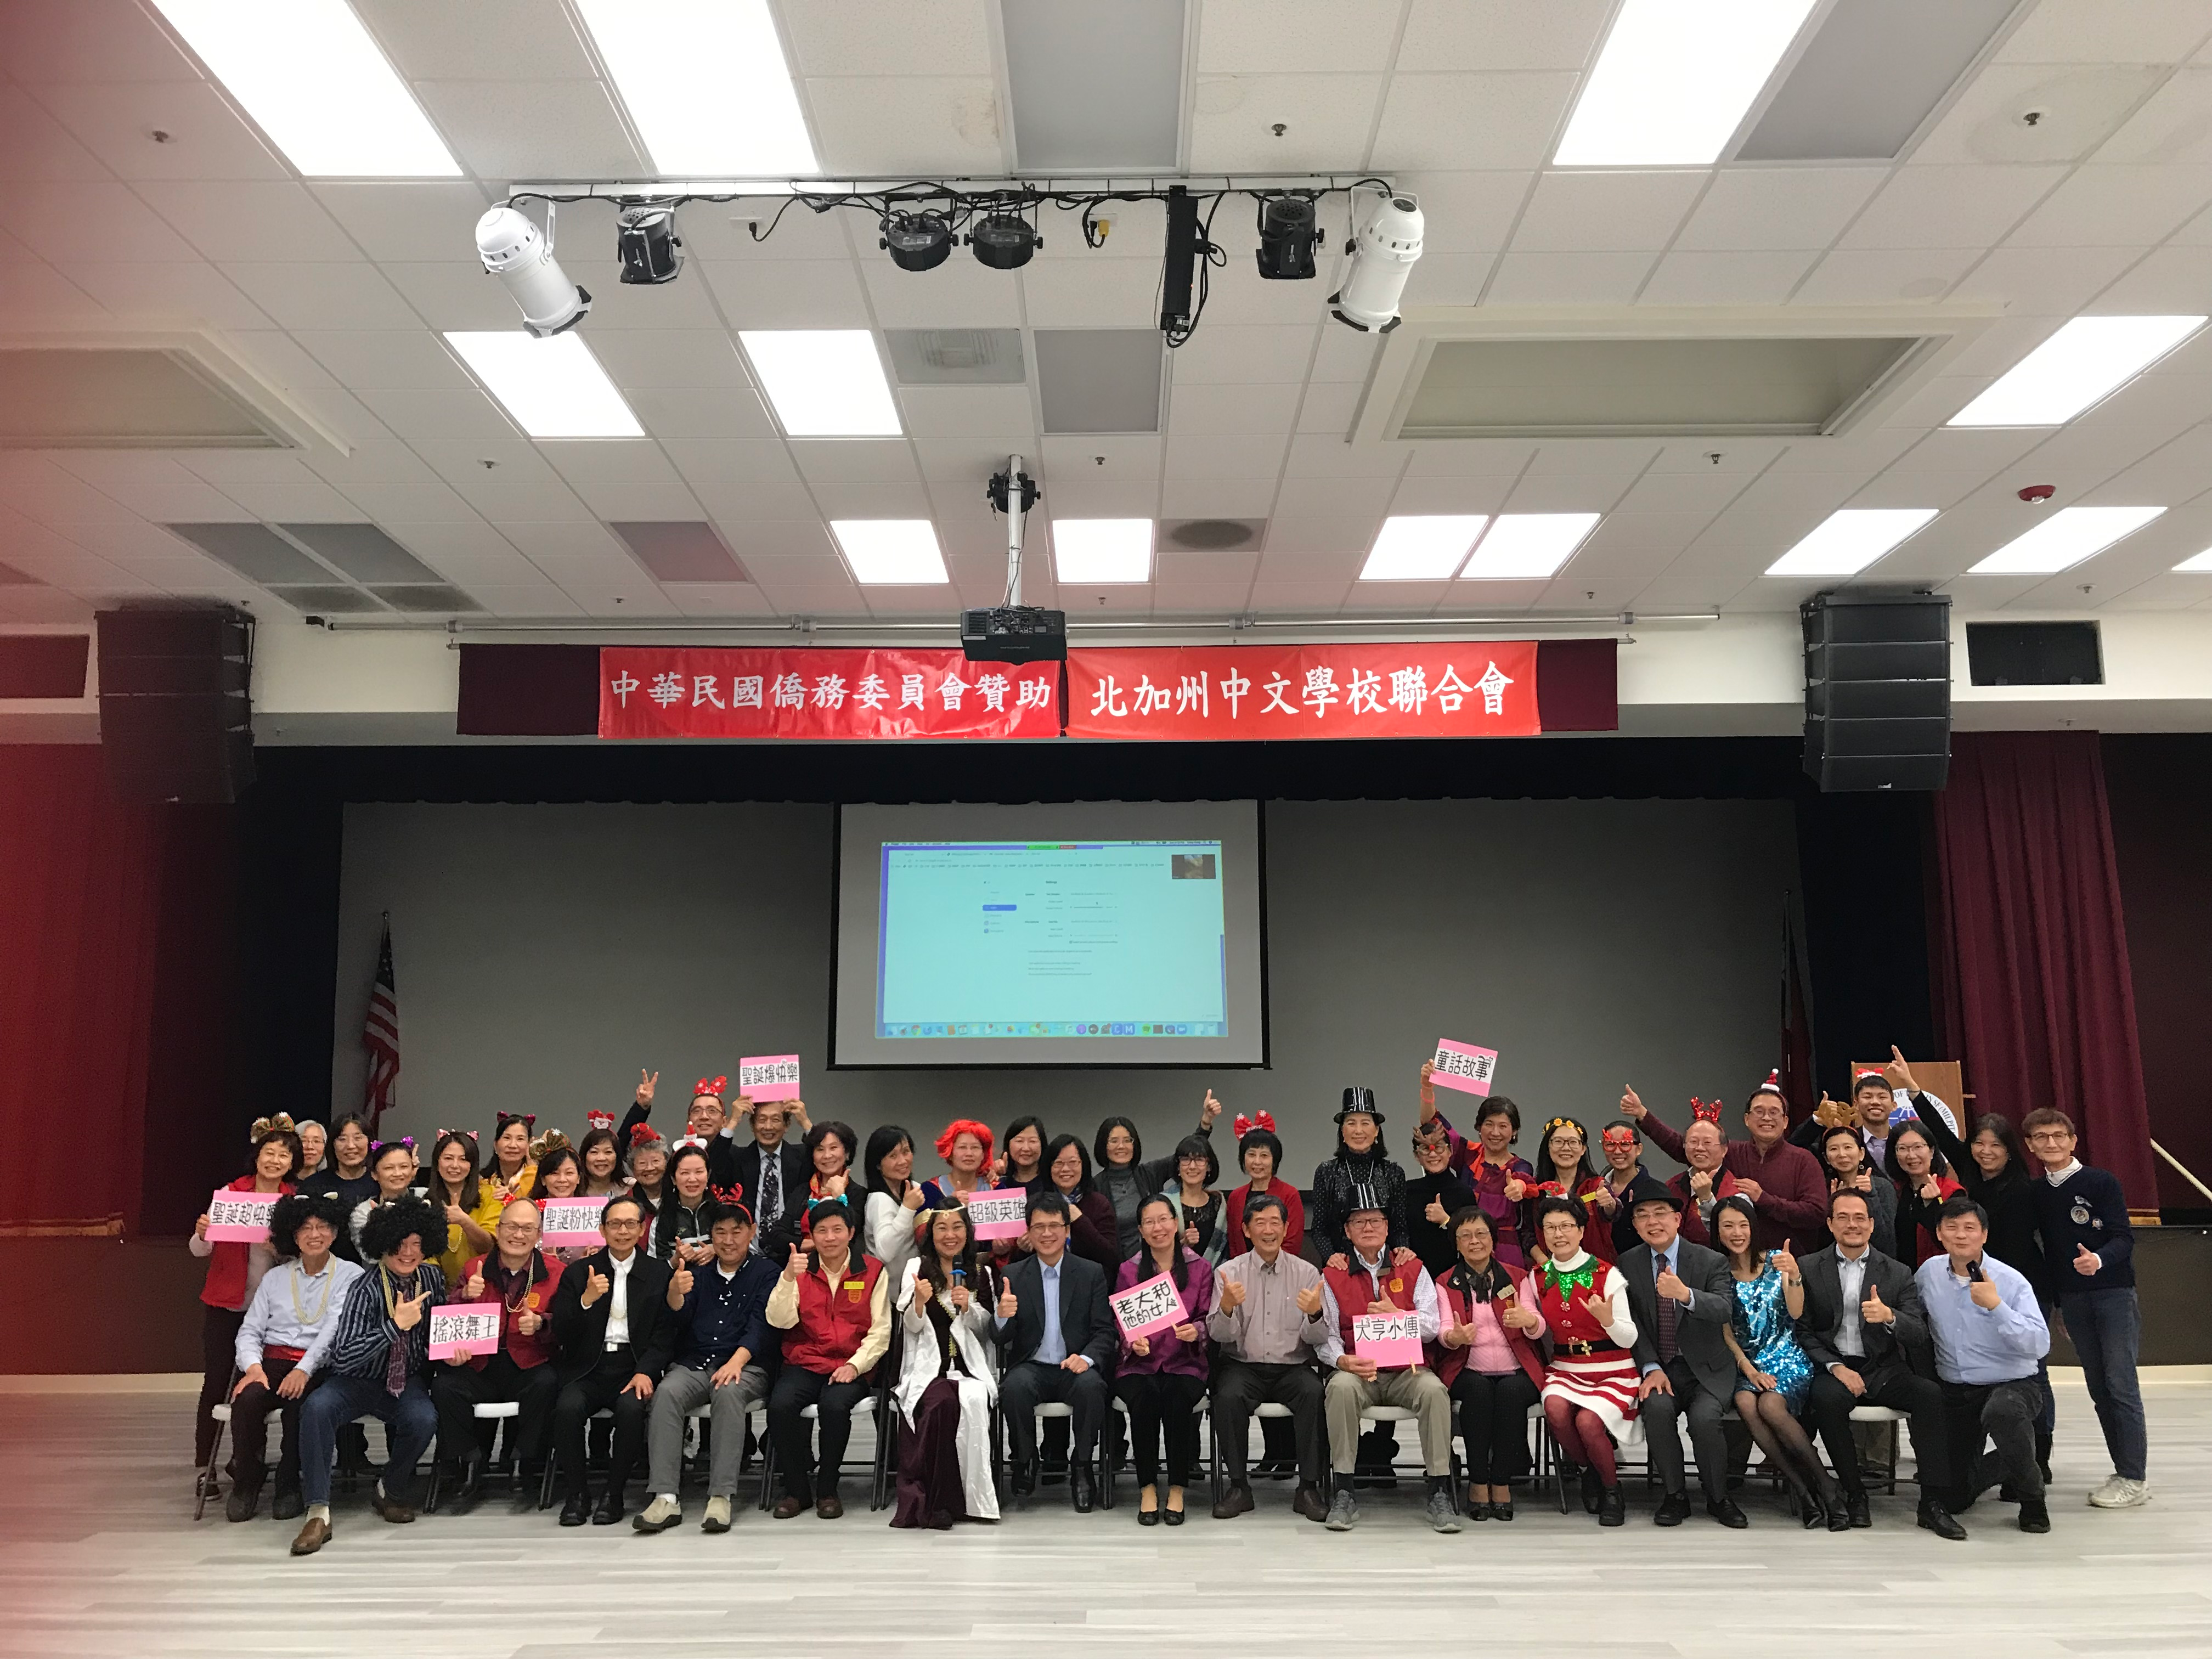 北加州中文學校聯合會舉辦「金山灣區中文教育永續經營策略」座談會圖片